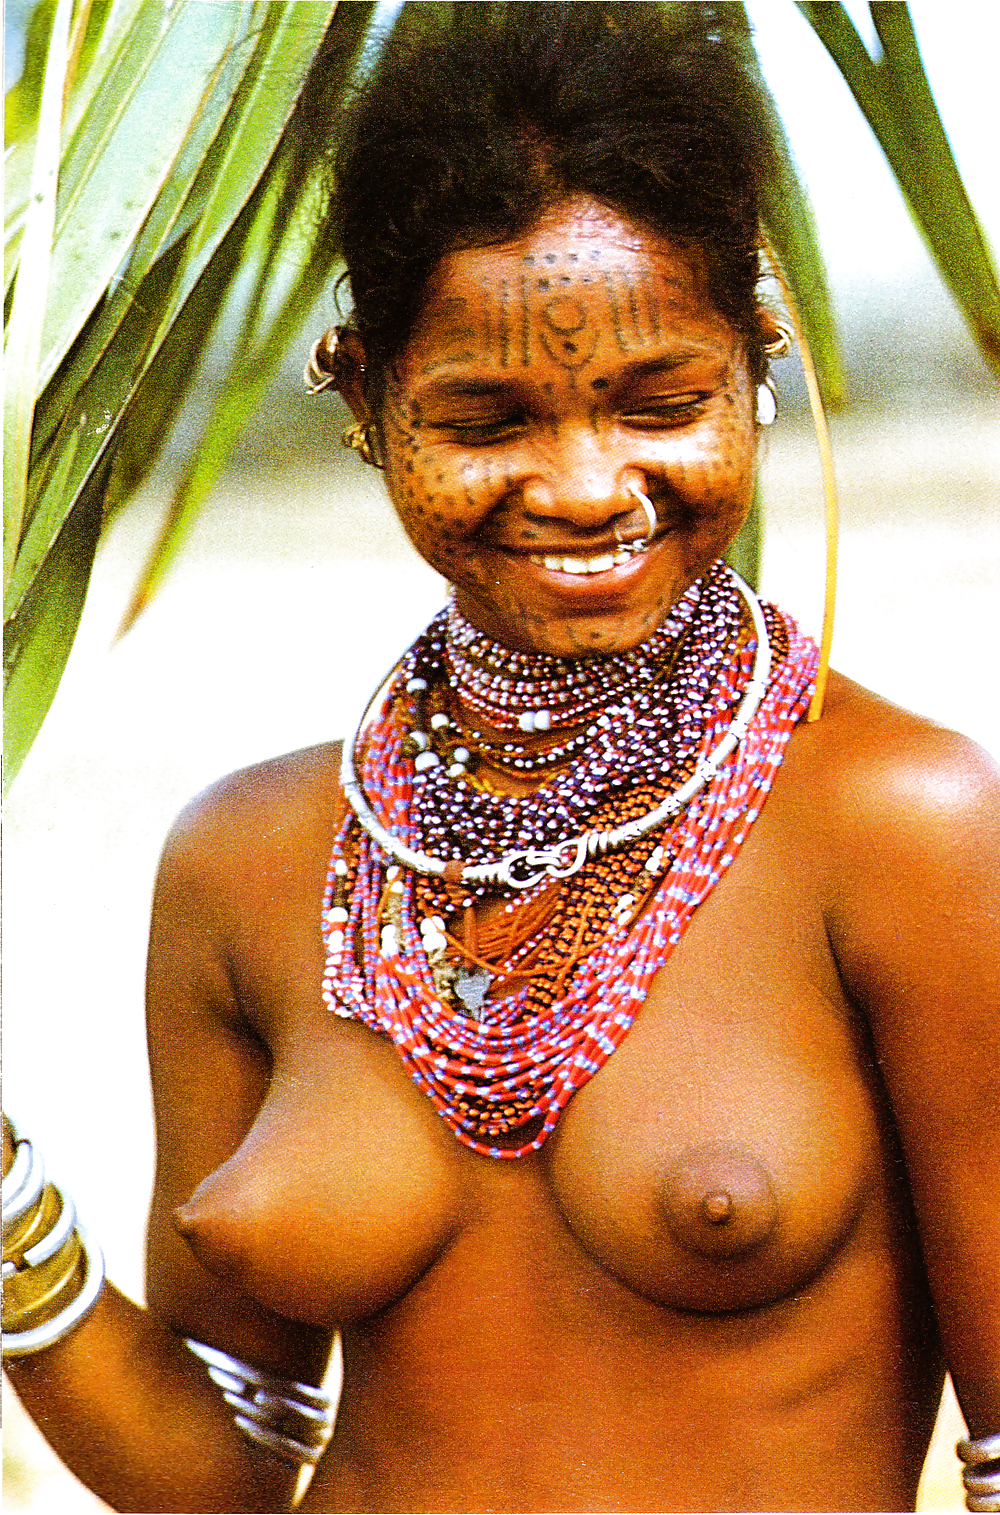 Hairy tribal women in africa